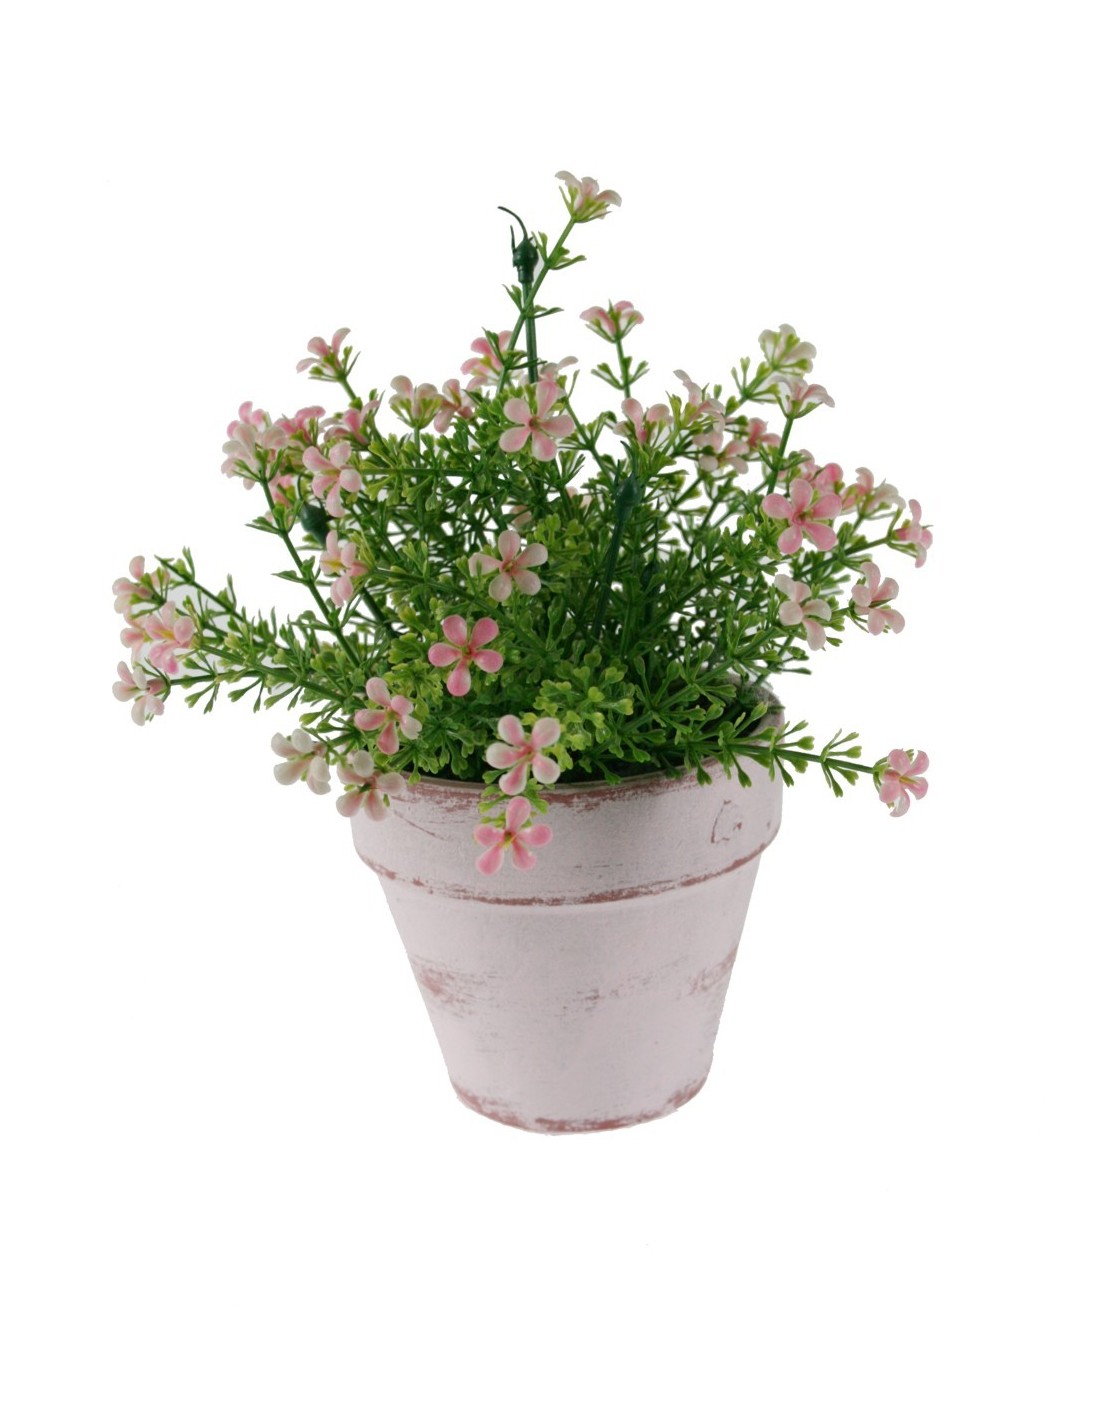 Flor artificial en maceta de cerámica con flores de color rosa decoración para el hogar, jardín, terraza